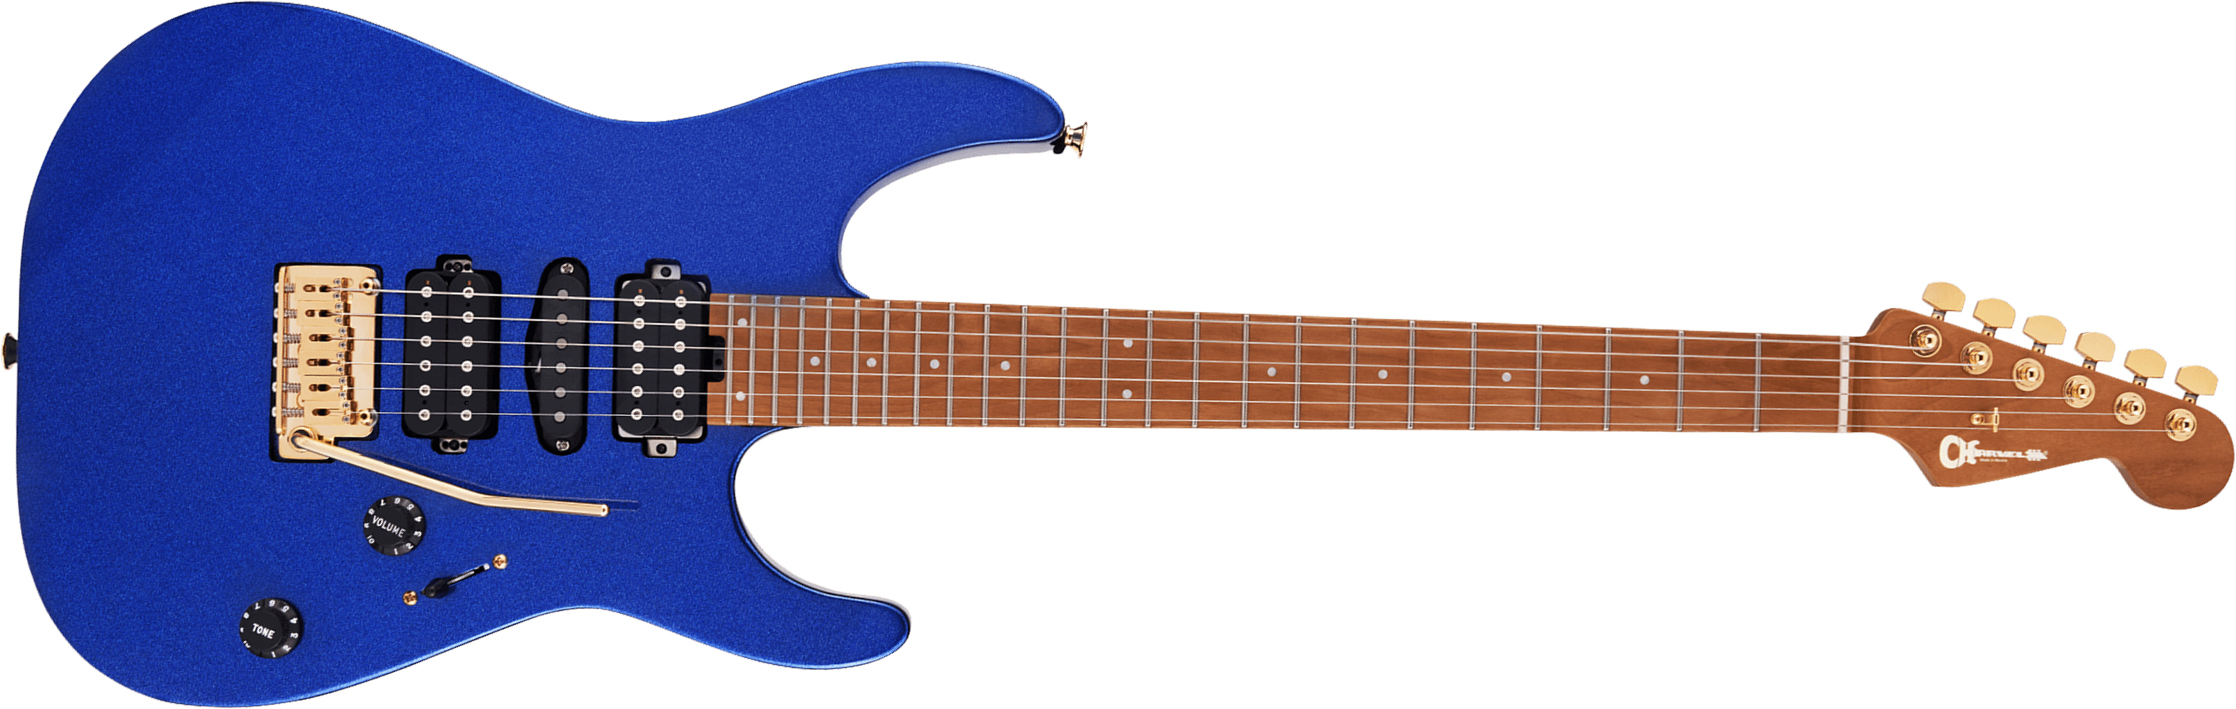 Charvel Dinky Dk24 Hsh 2pt Cm Pro-mod Seymour Duncan Trem Mn - Mystic Blue - Str shape electric guitar - Main picture